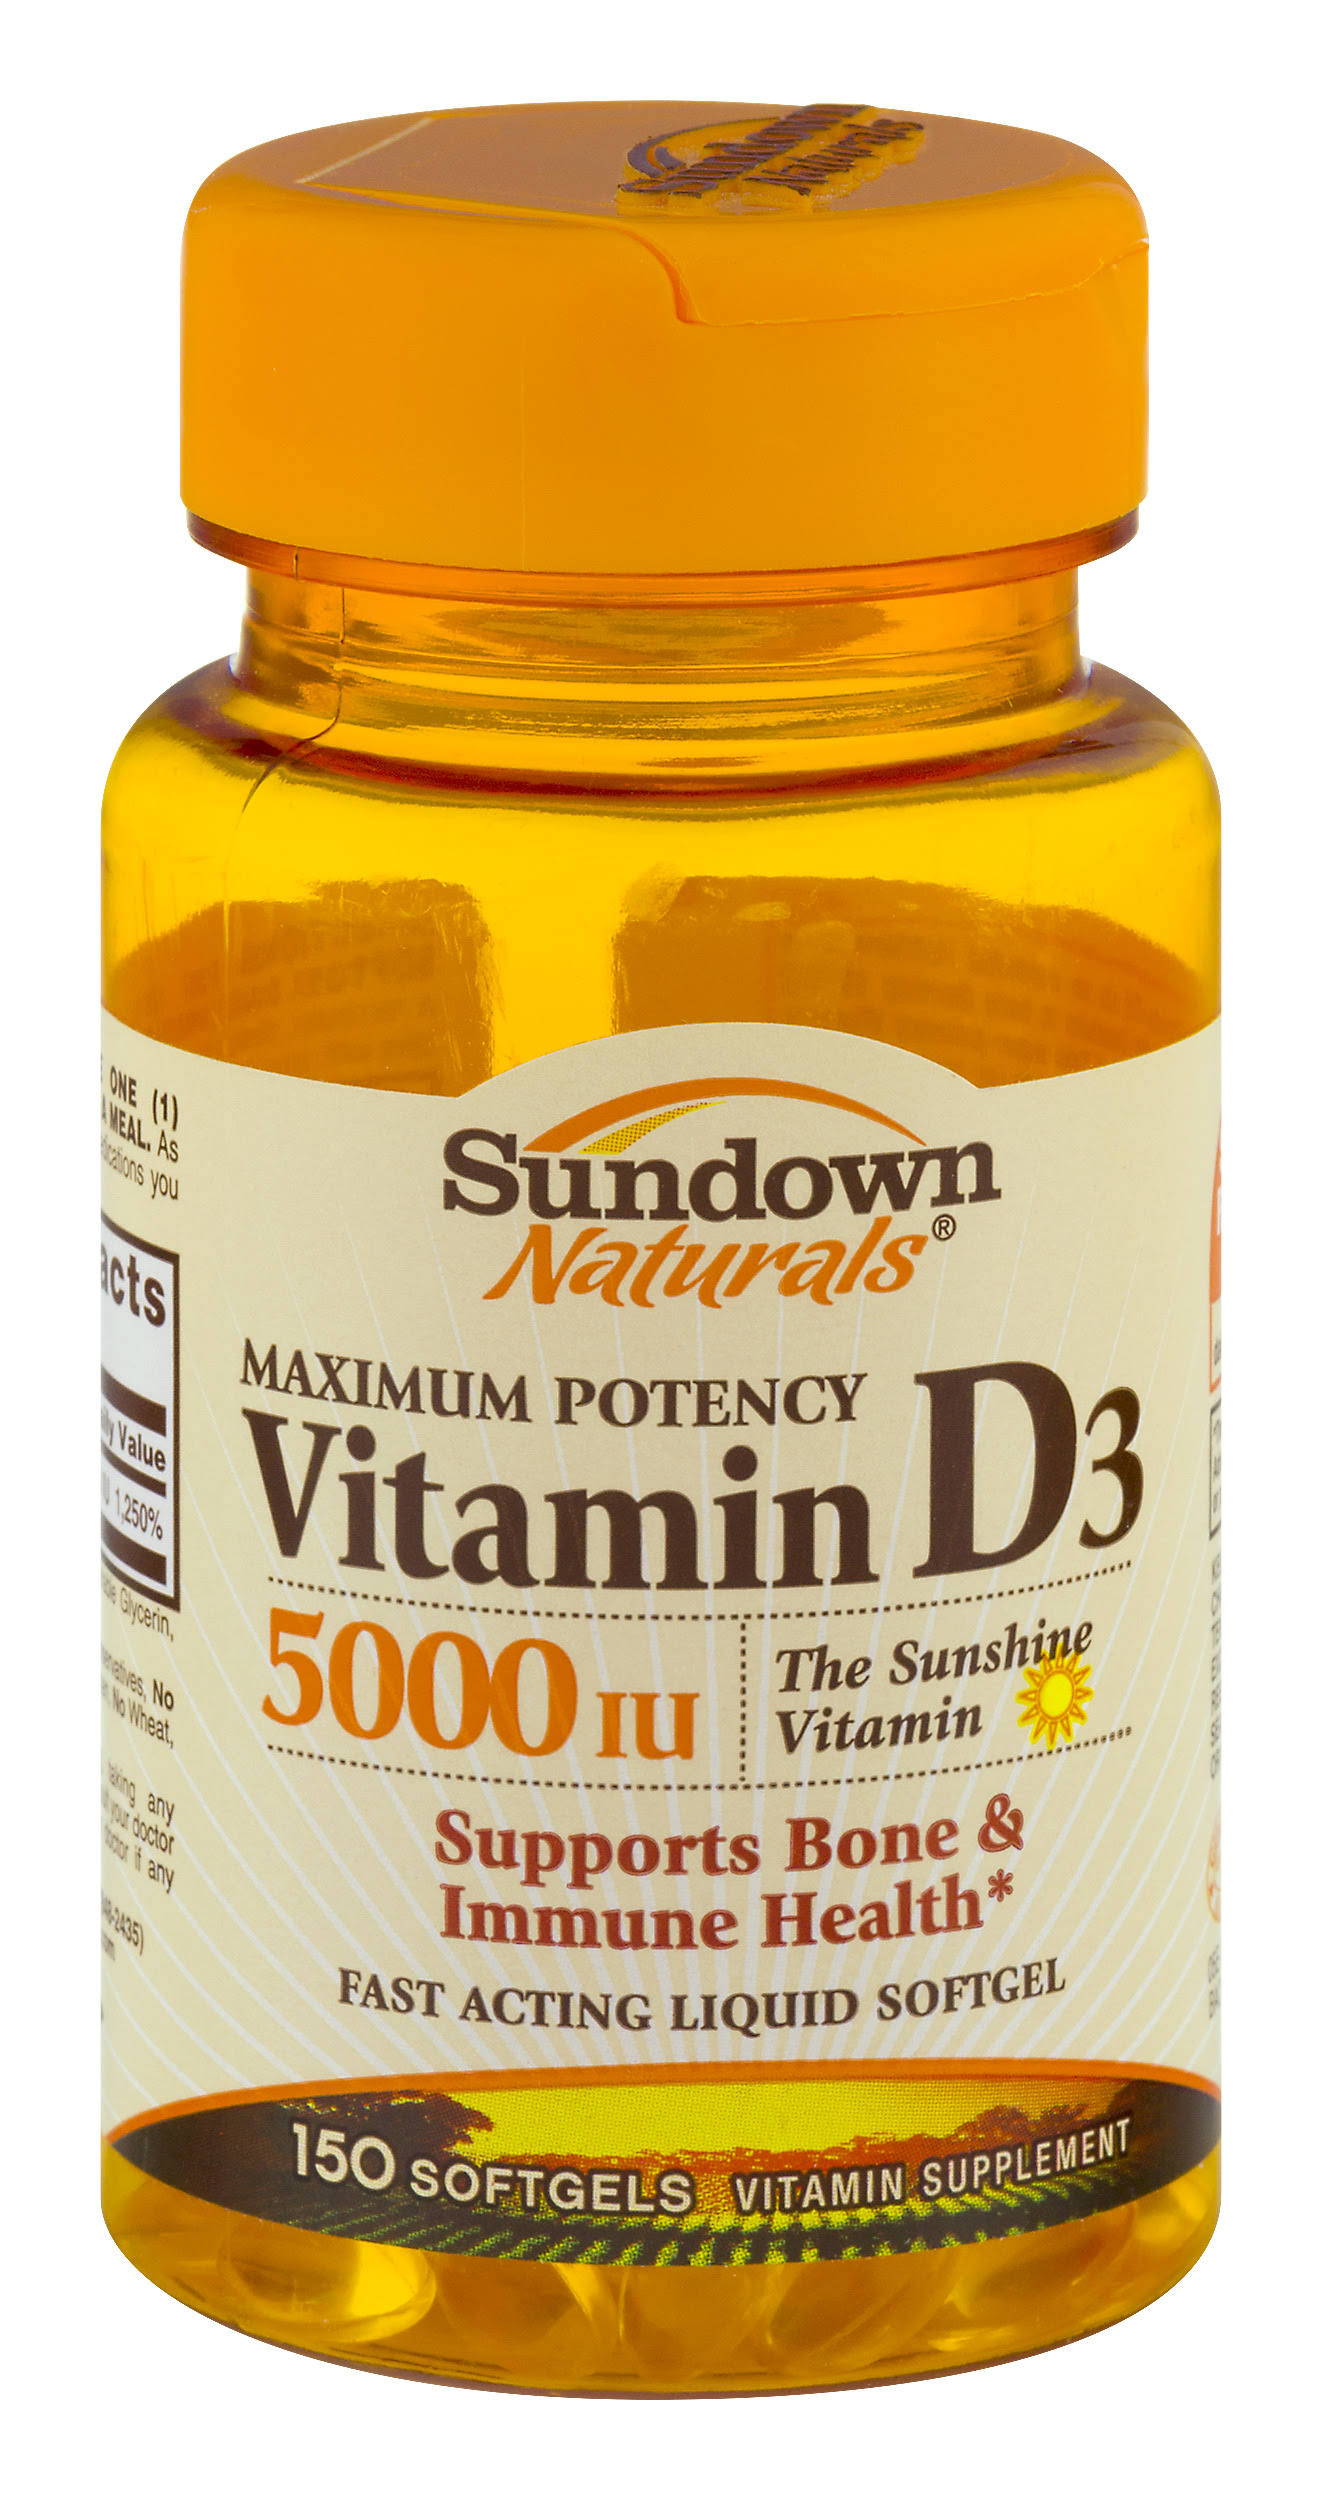 Sundown Naturals Vitamin D3 - 5000 Iu, 150 softgels